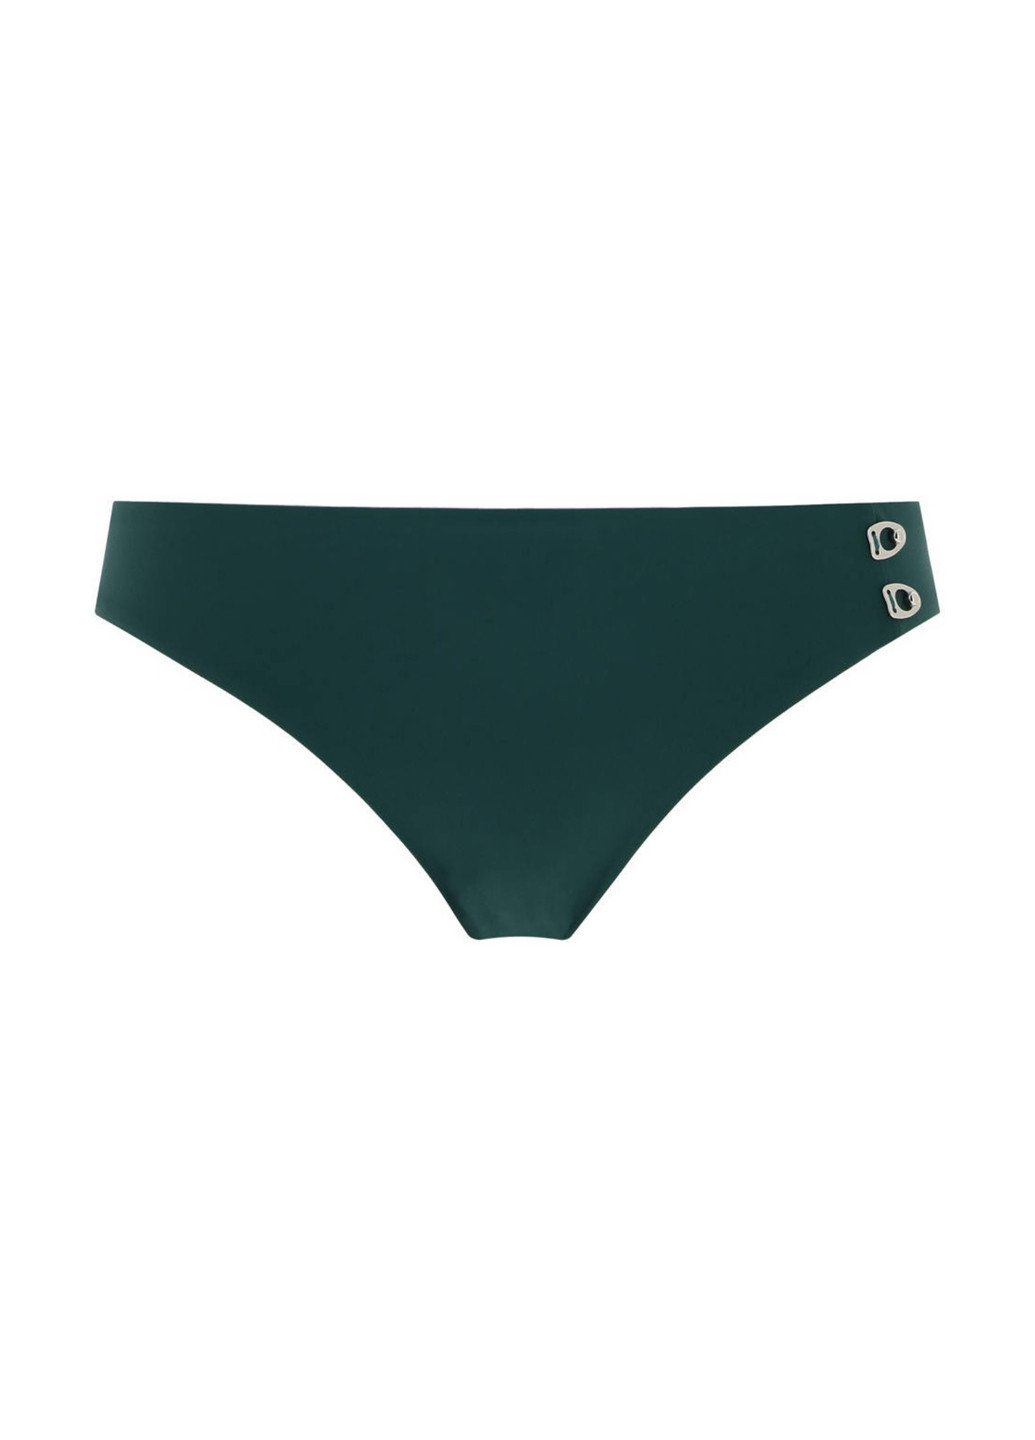 Темно-зеленый летний купальник (лиф, трусы) раздельный Chantelle